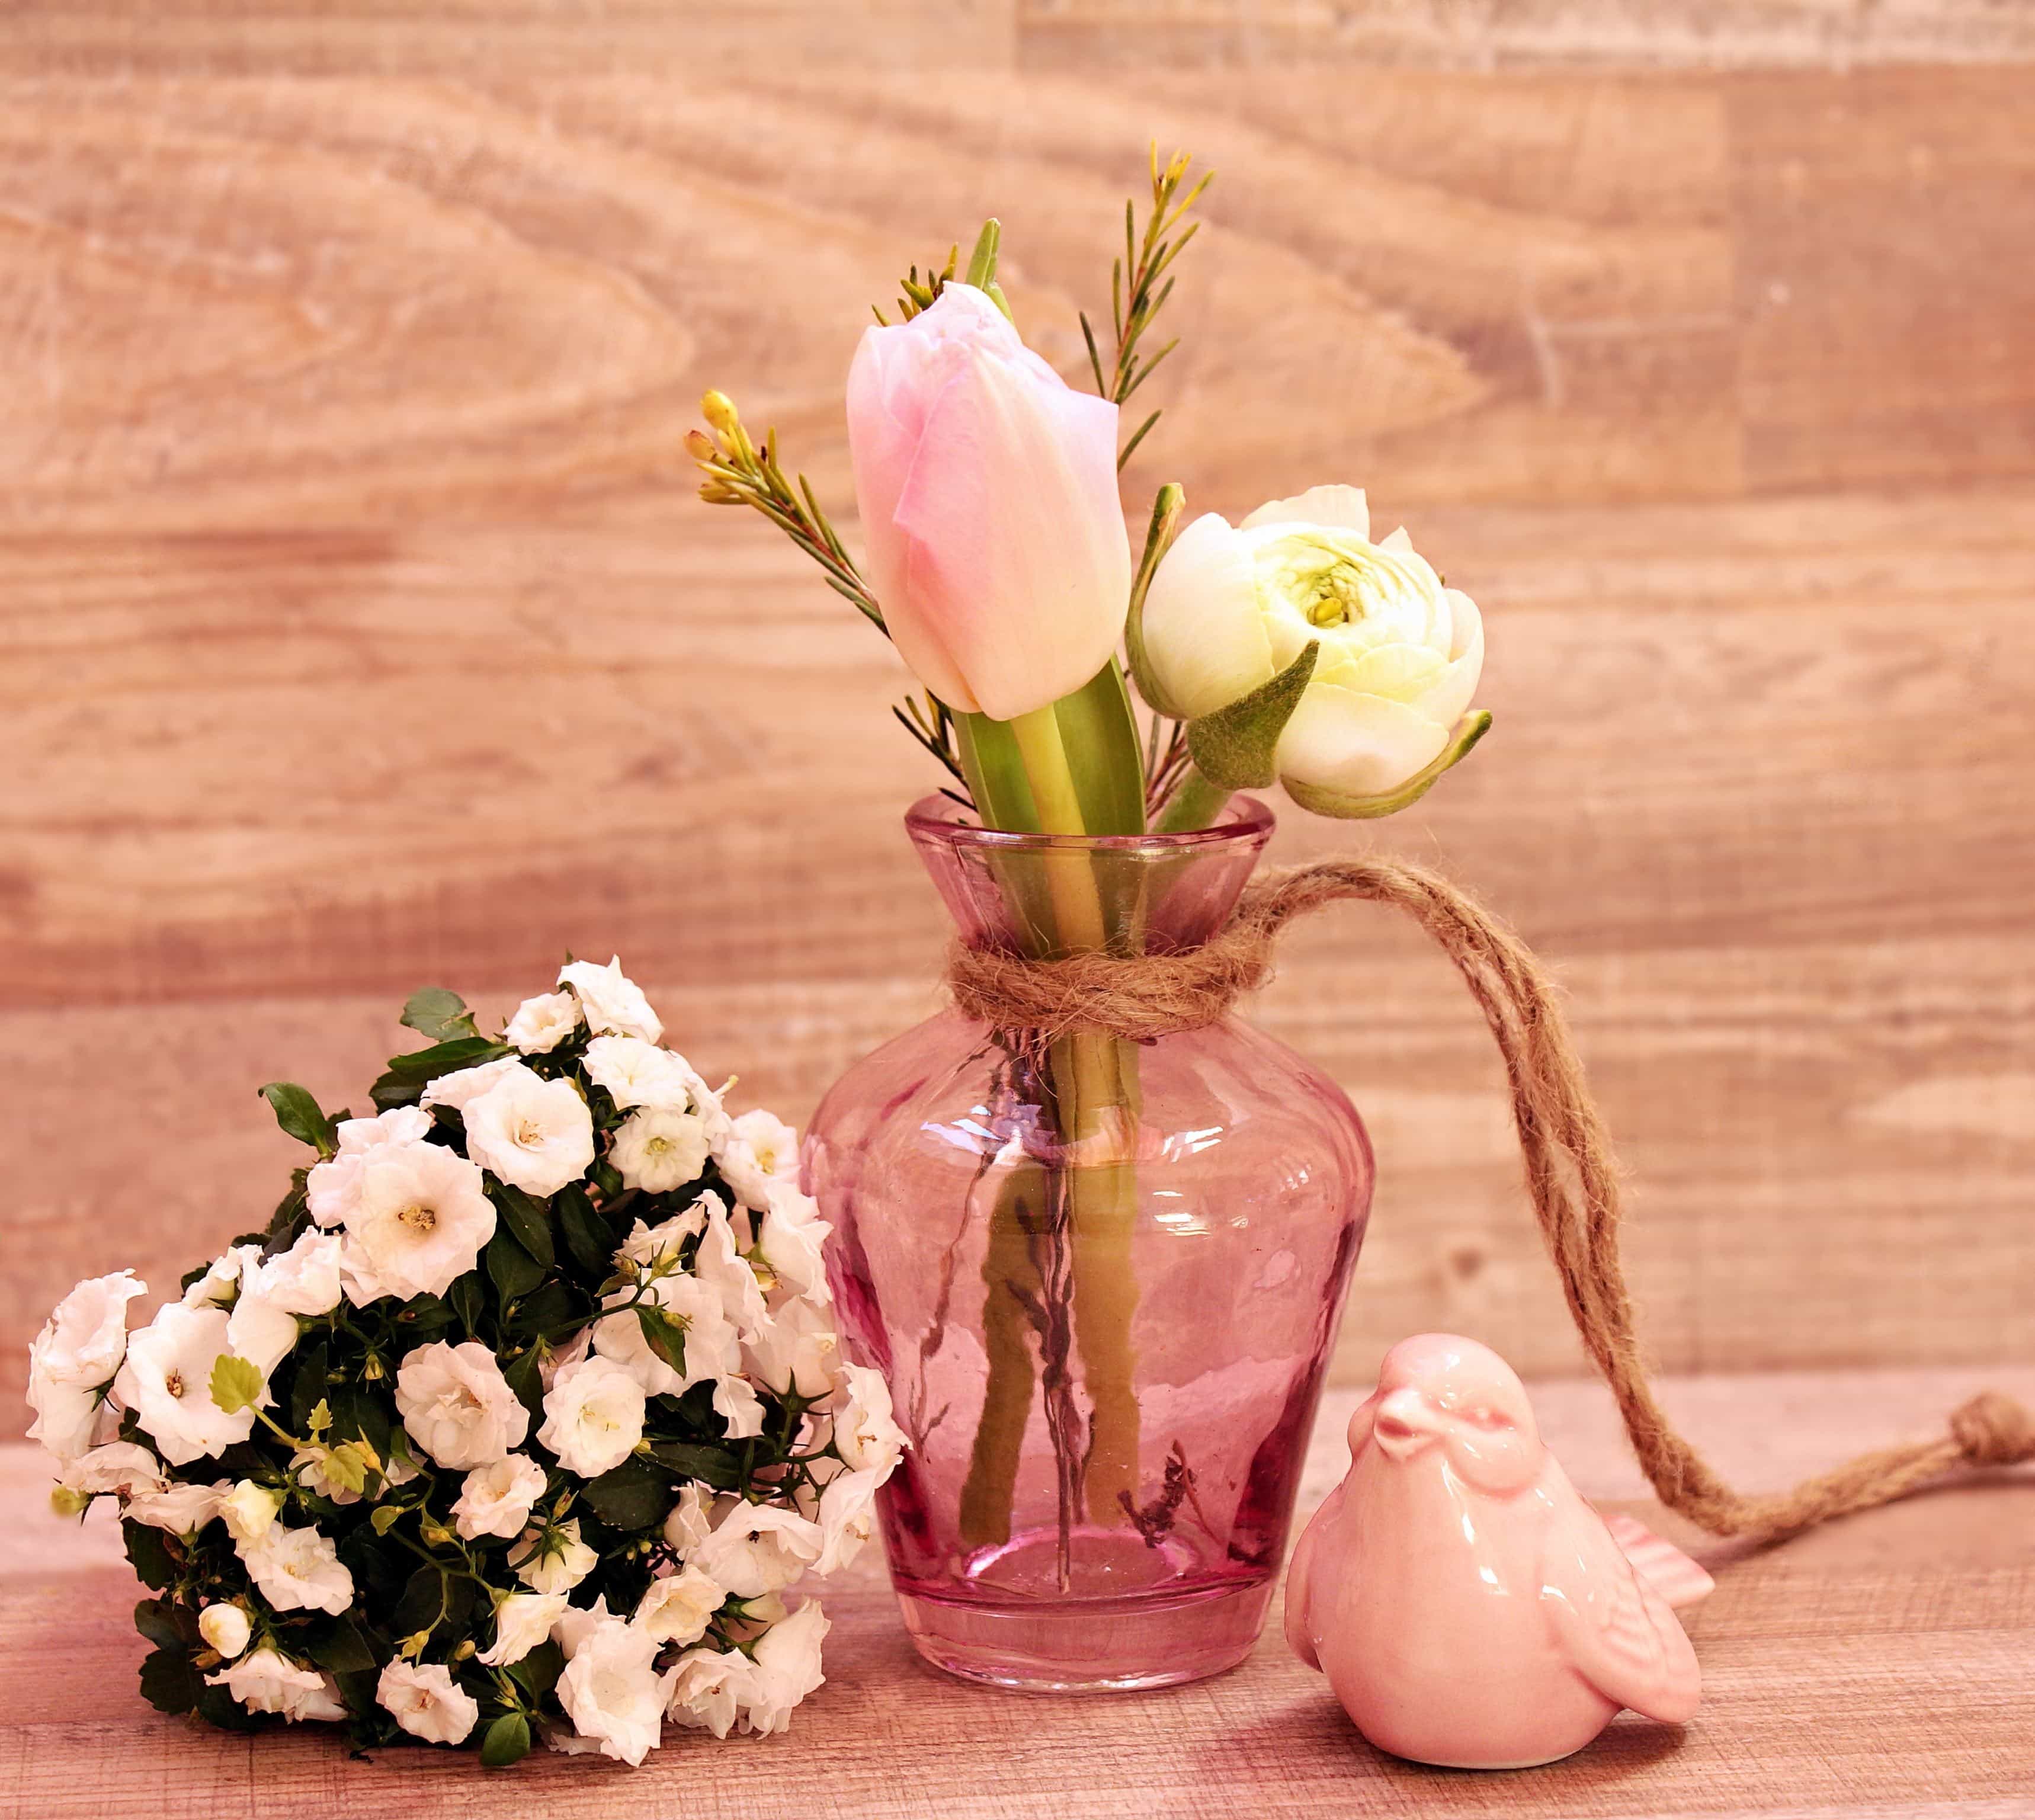 郁金香在花瓶里的照片 · 免费素材图片